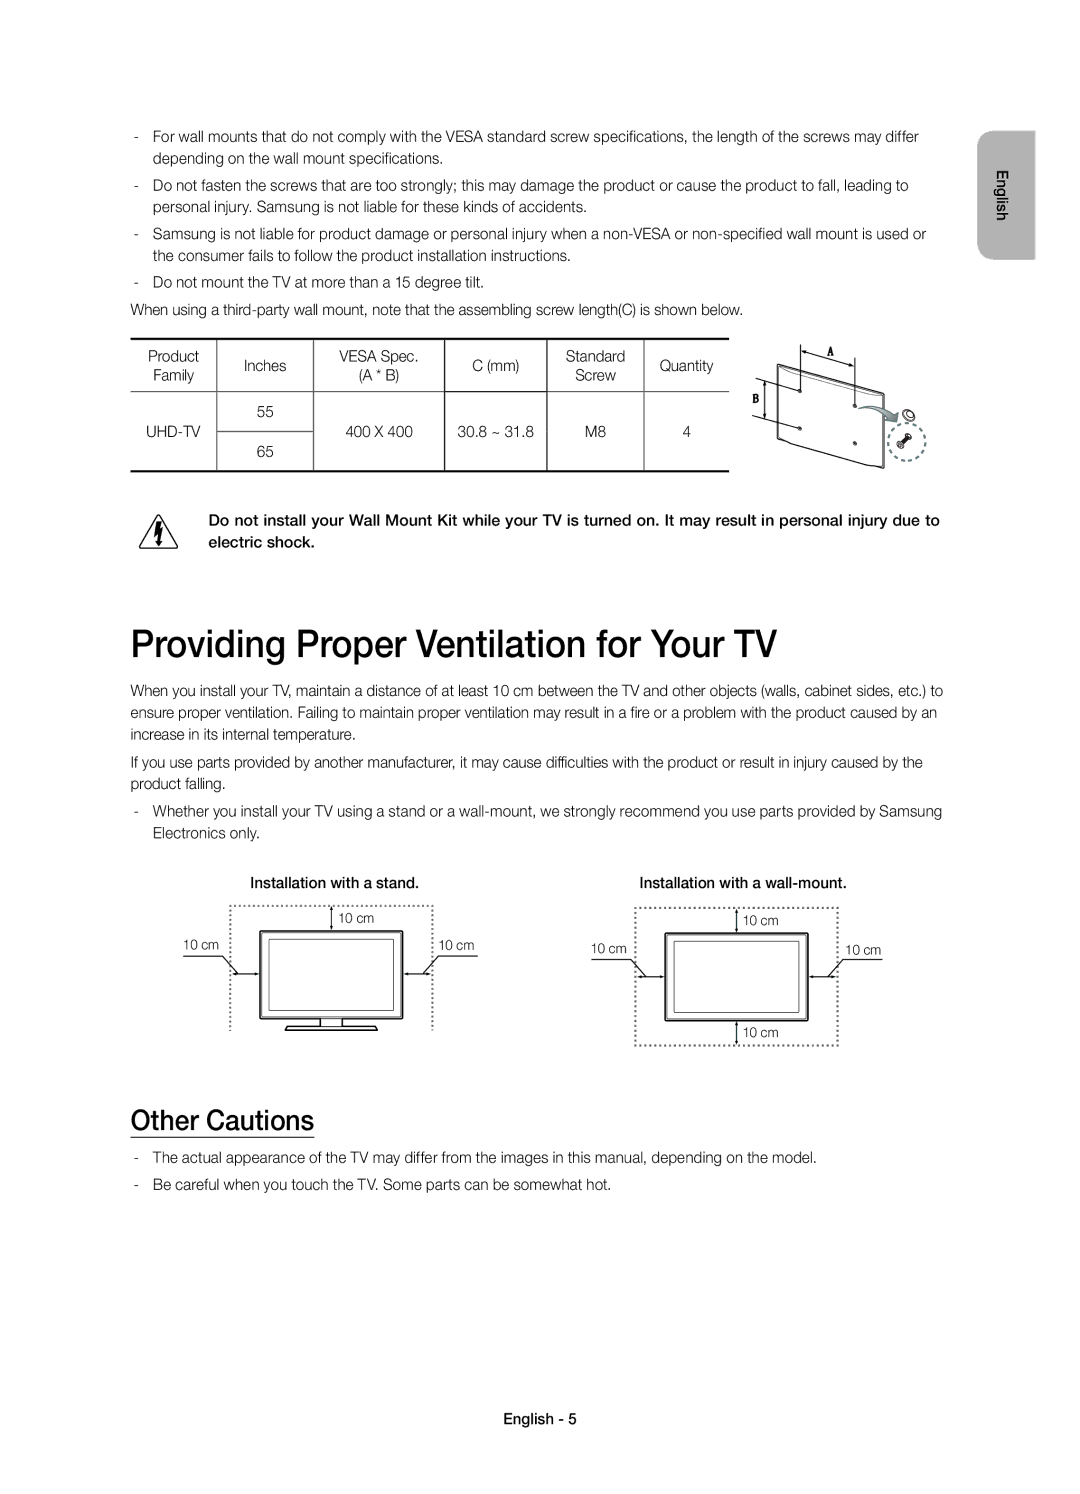 Samsung UE65HU7200SXZF, UE55HU7200SXZG, UE55HU7200SXXH manual Providing Proper Ventilation for Your TV, Other Cautions 